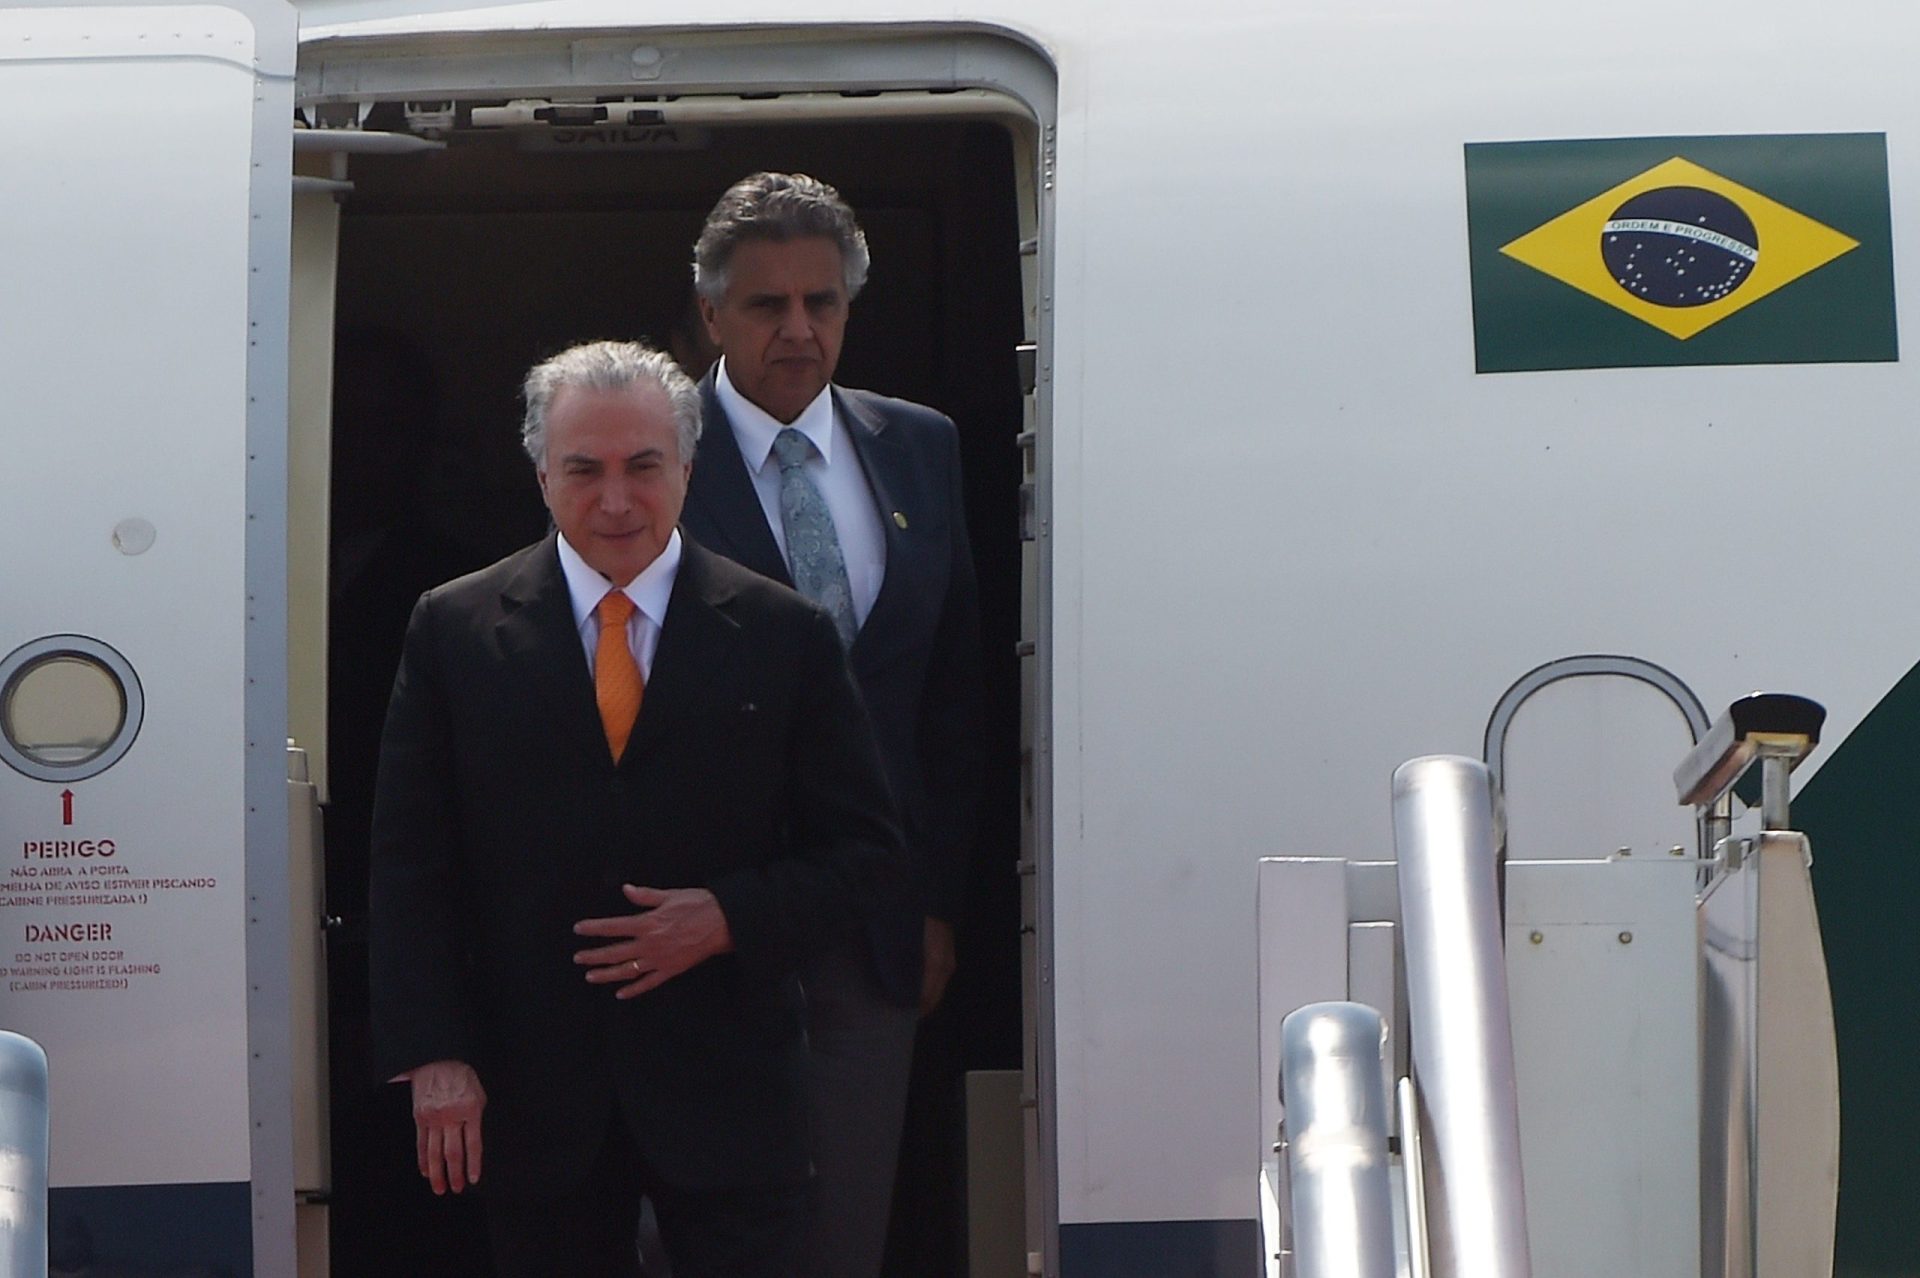 Ascensão de Temer abala alianças brasileiras na América Latina